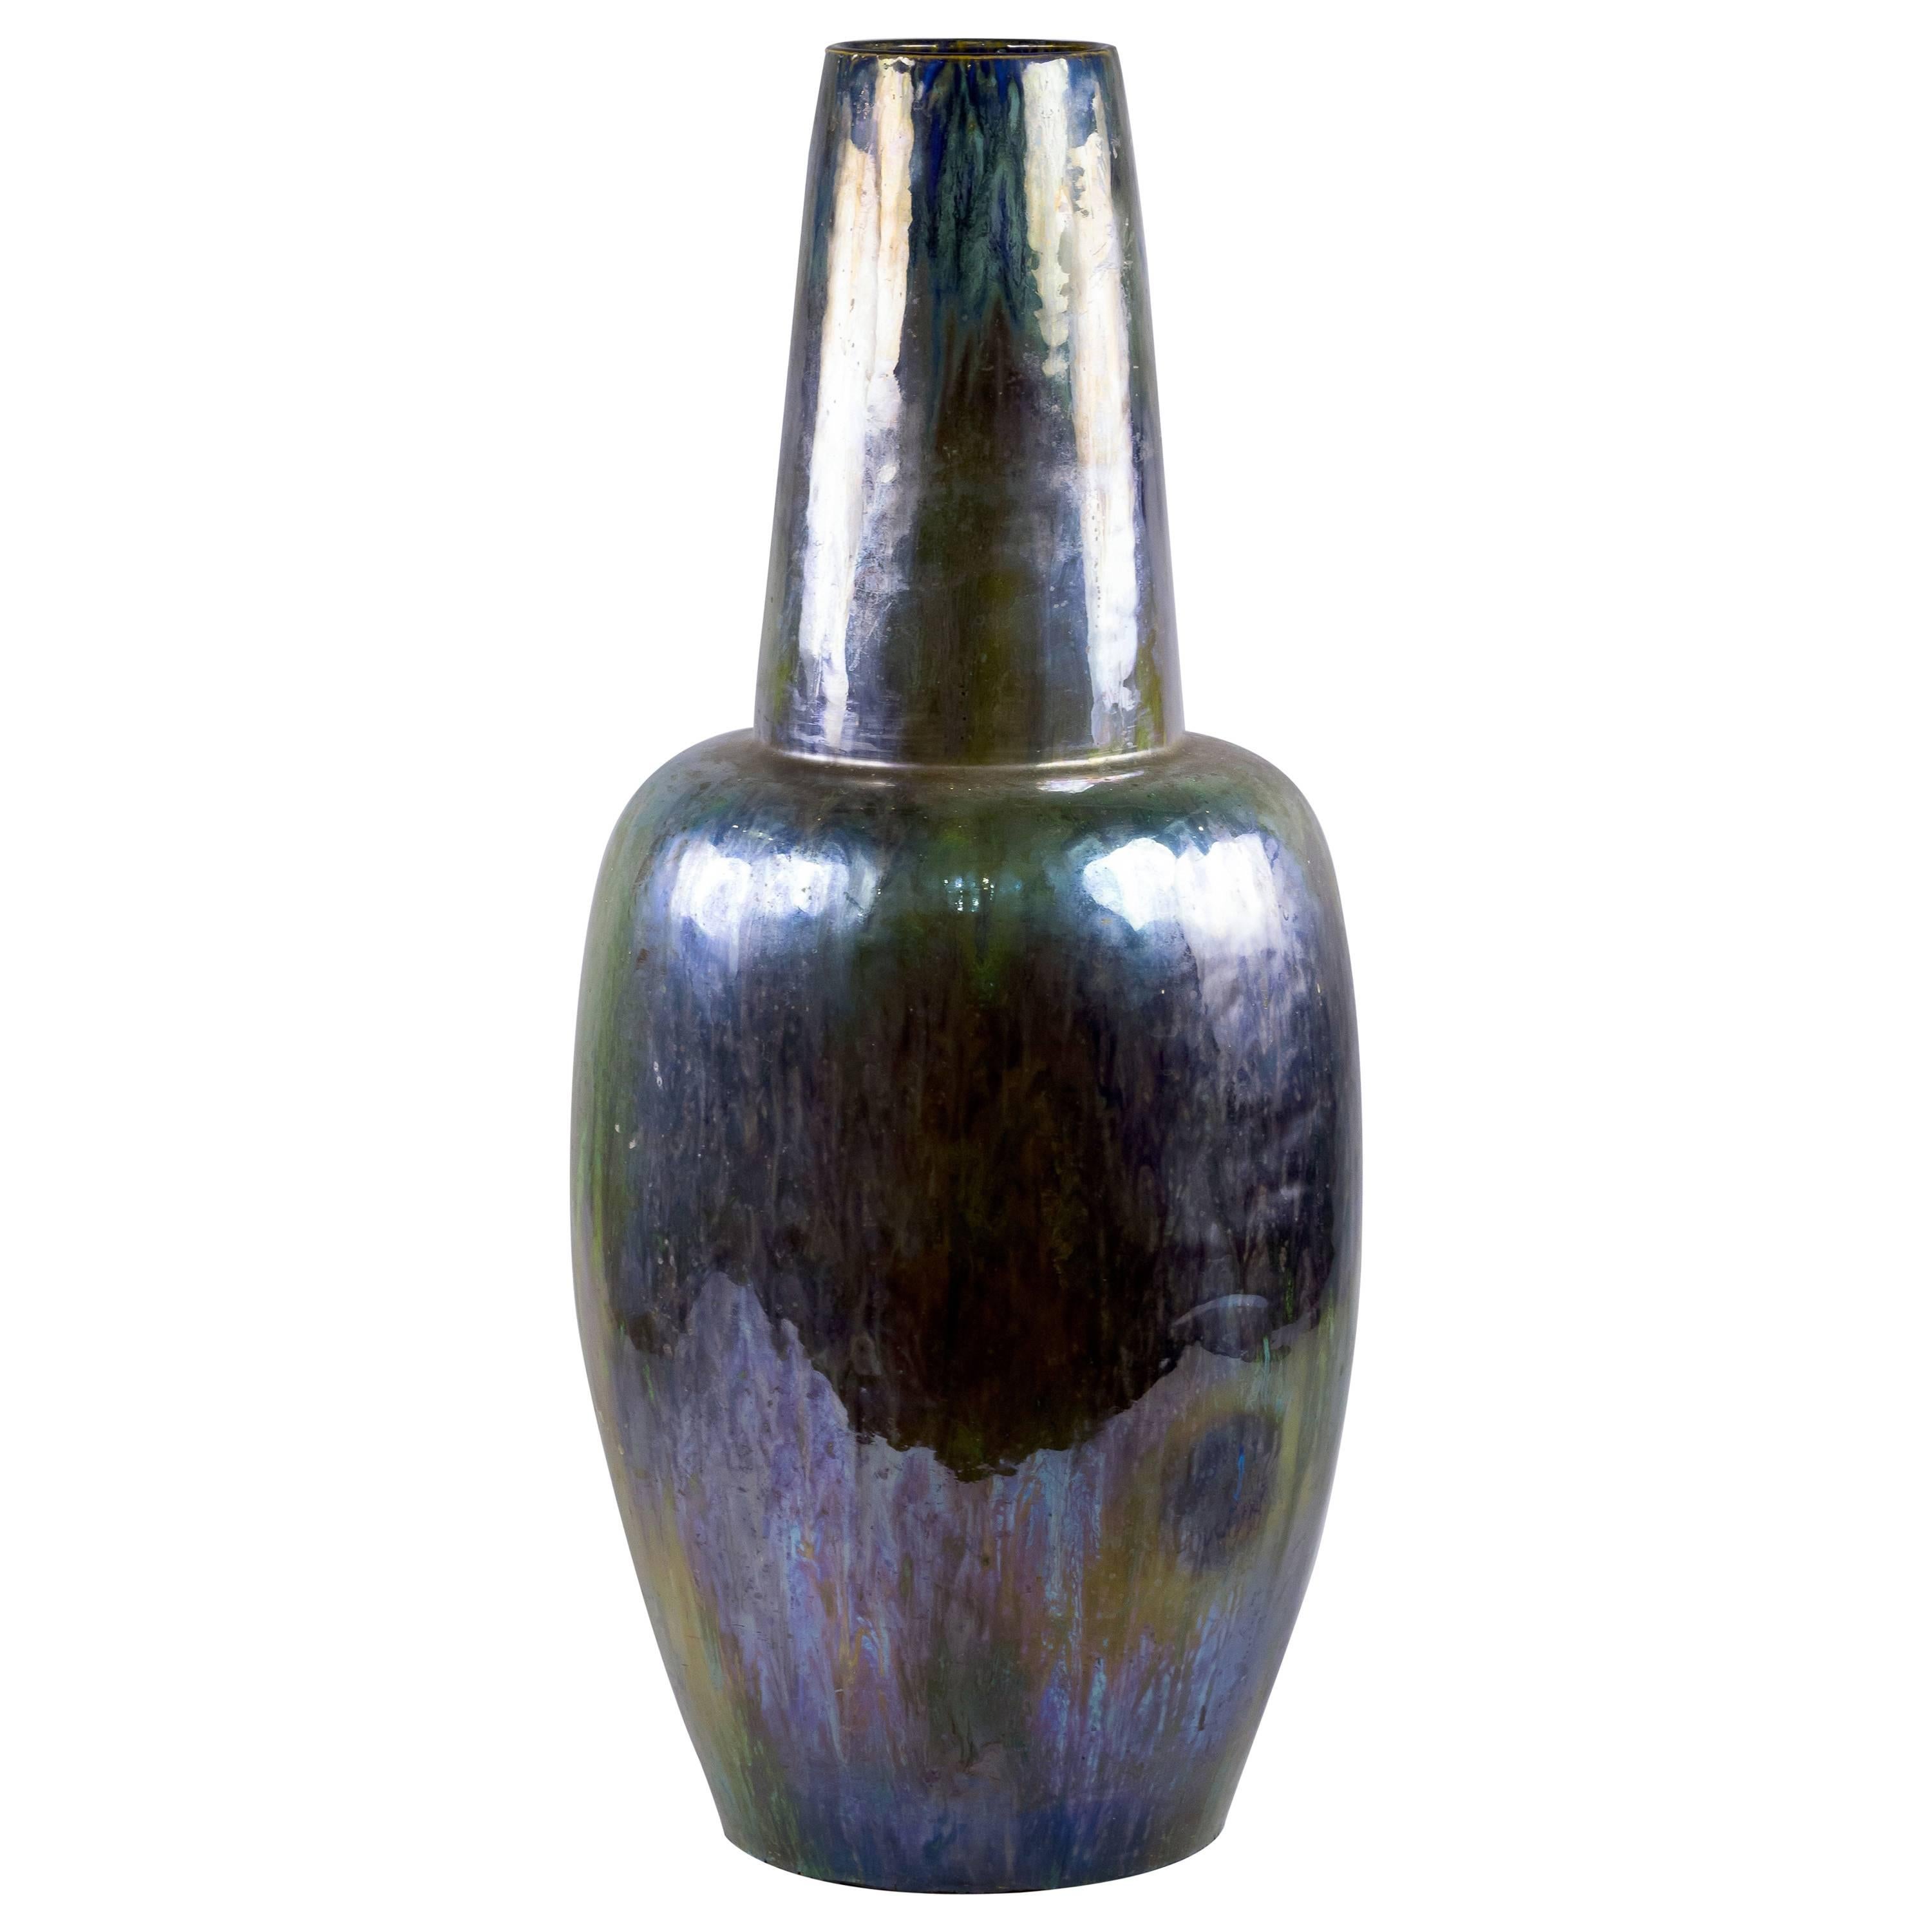 Grand vase flambe irisé en poterie française de style Art nouveau, vers 1900 en vente